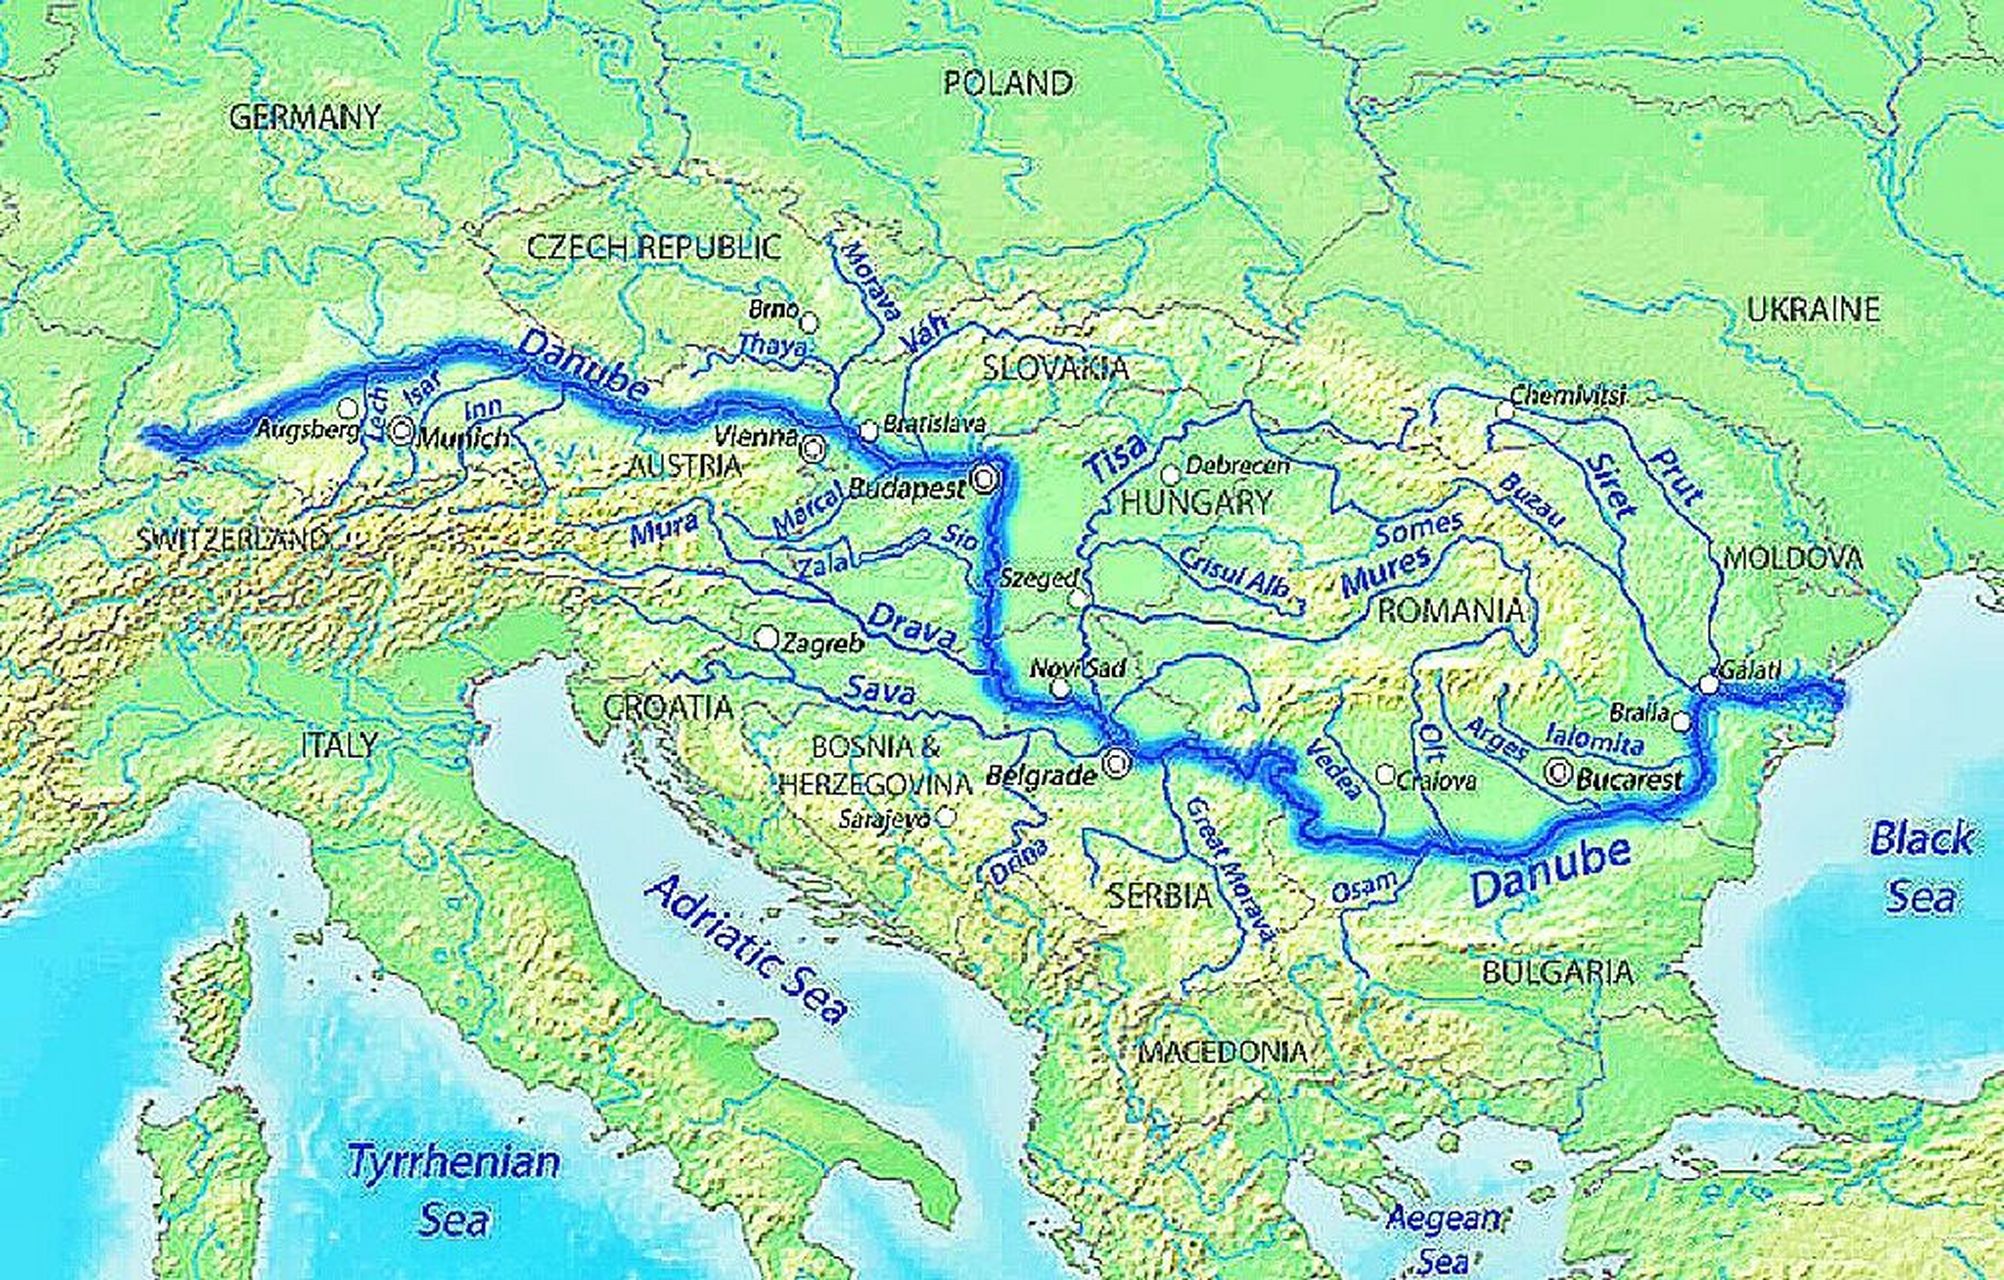 多瑙河 多瑙河是欧洲第二长河,在欧洲河流中长度仅次于伏尔加河